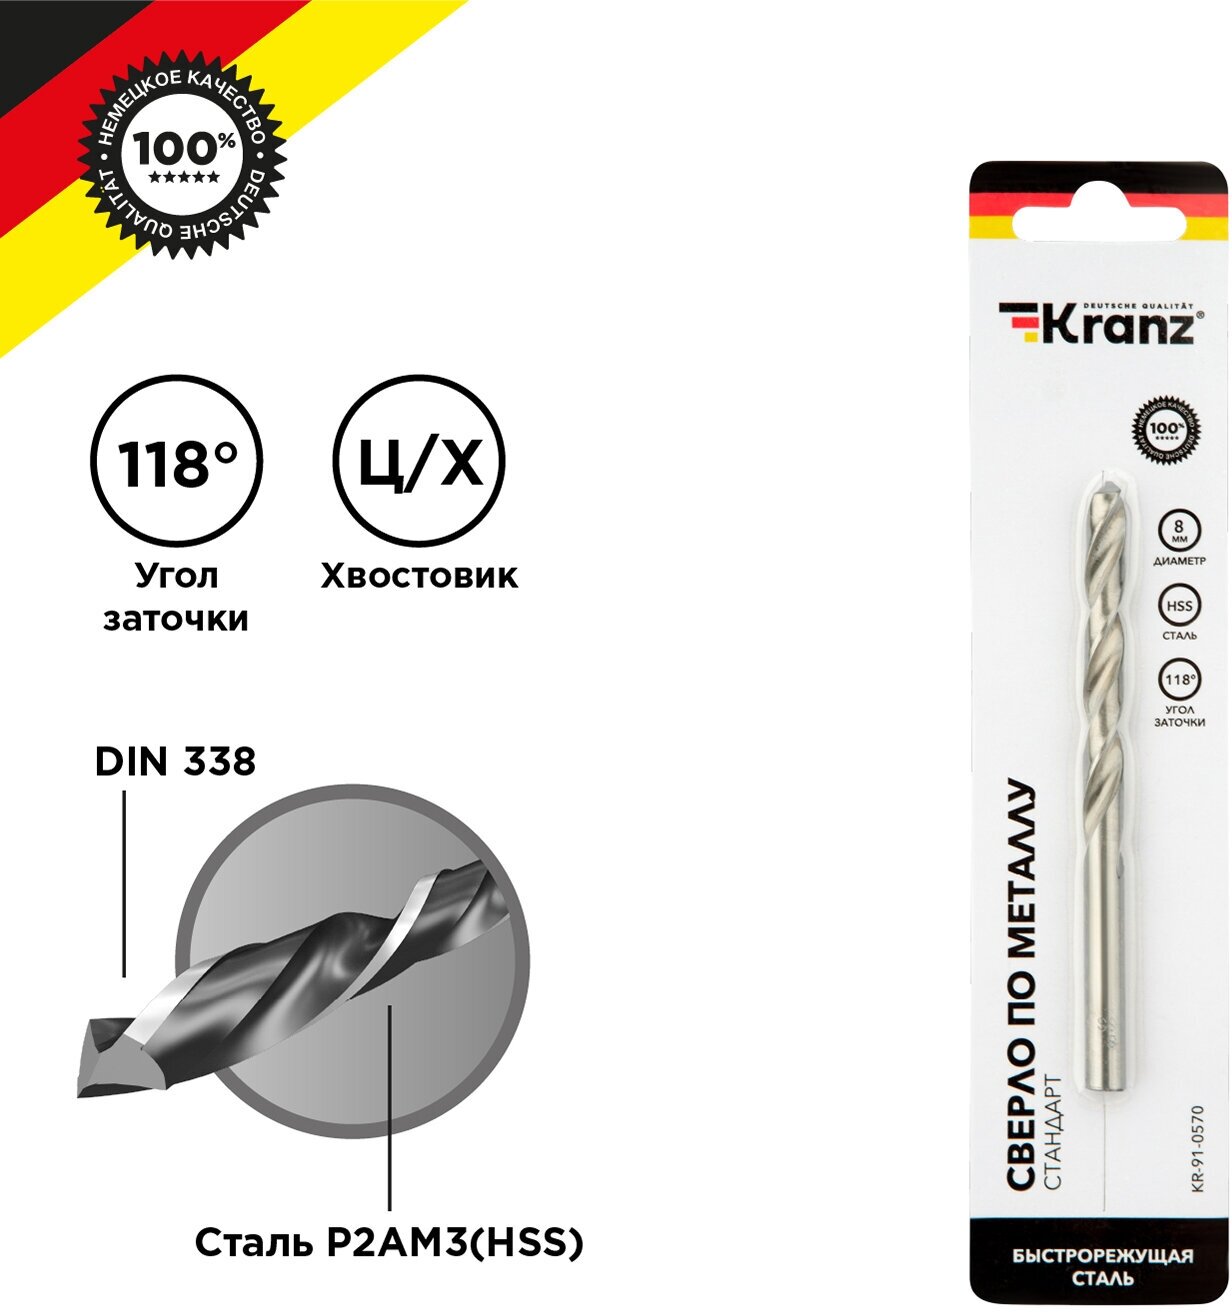 Сверло KRANZ по металлу 80 мм повышенной прочности с углом заточки 118 градусов HSS 1 шт. в упаковке DIN 338